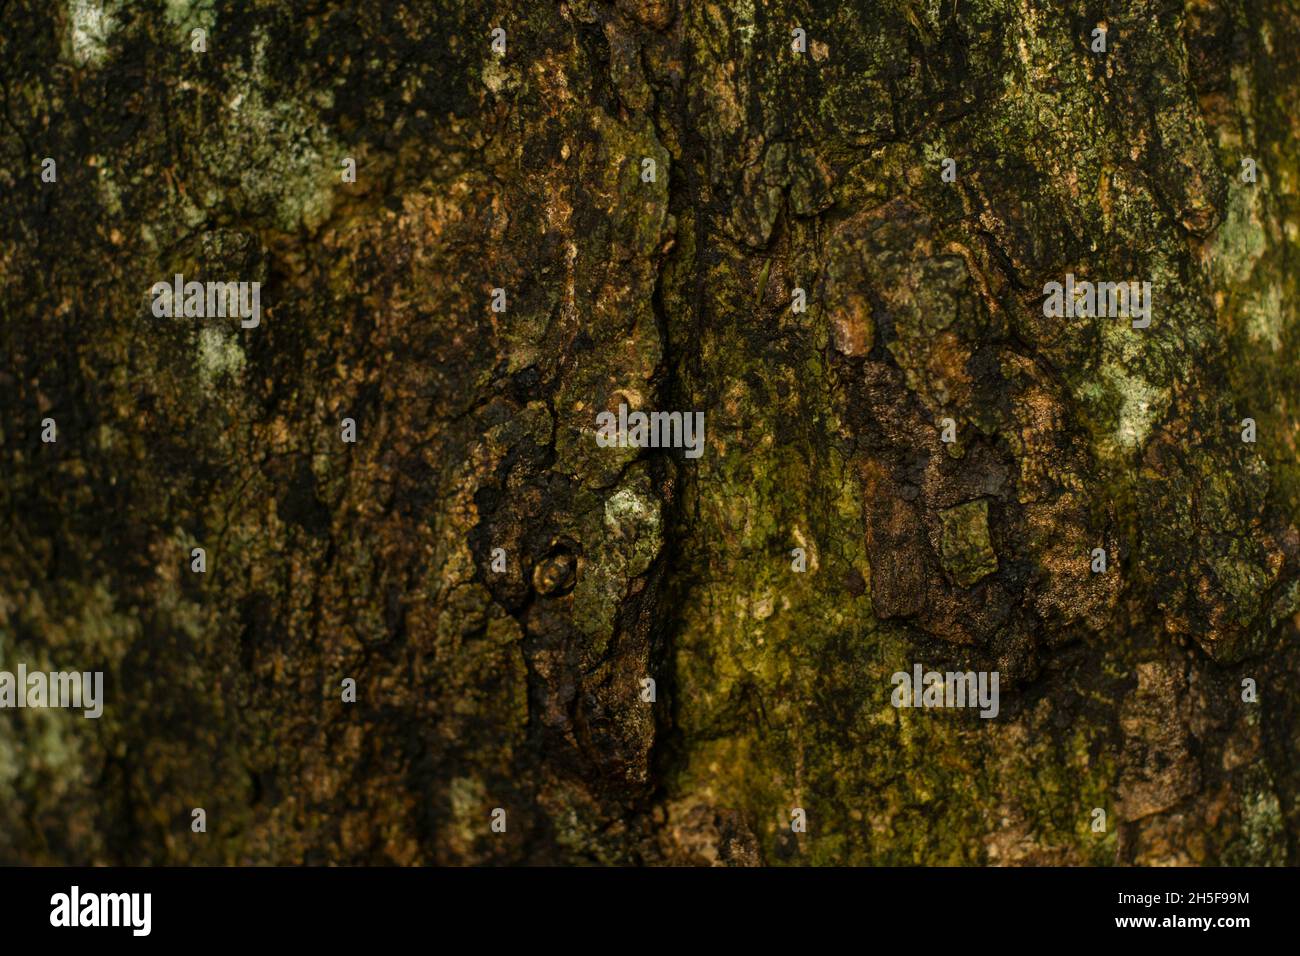 La texture close-up di corteccia di albero. La superficie ruvida di albero naturale corteccia sfondo e tronco. Foto Stock